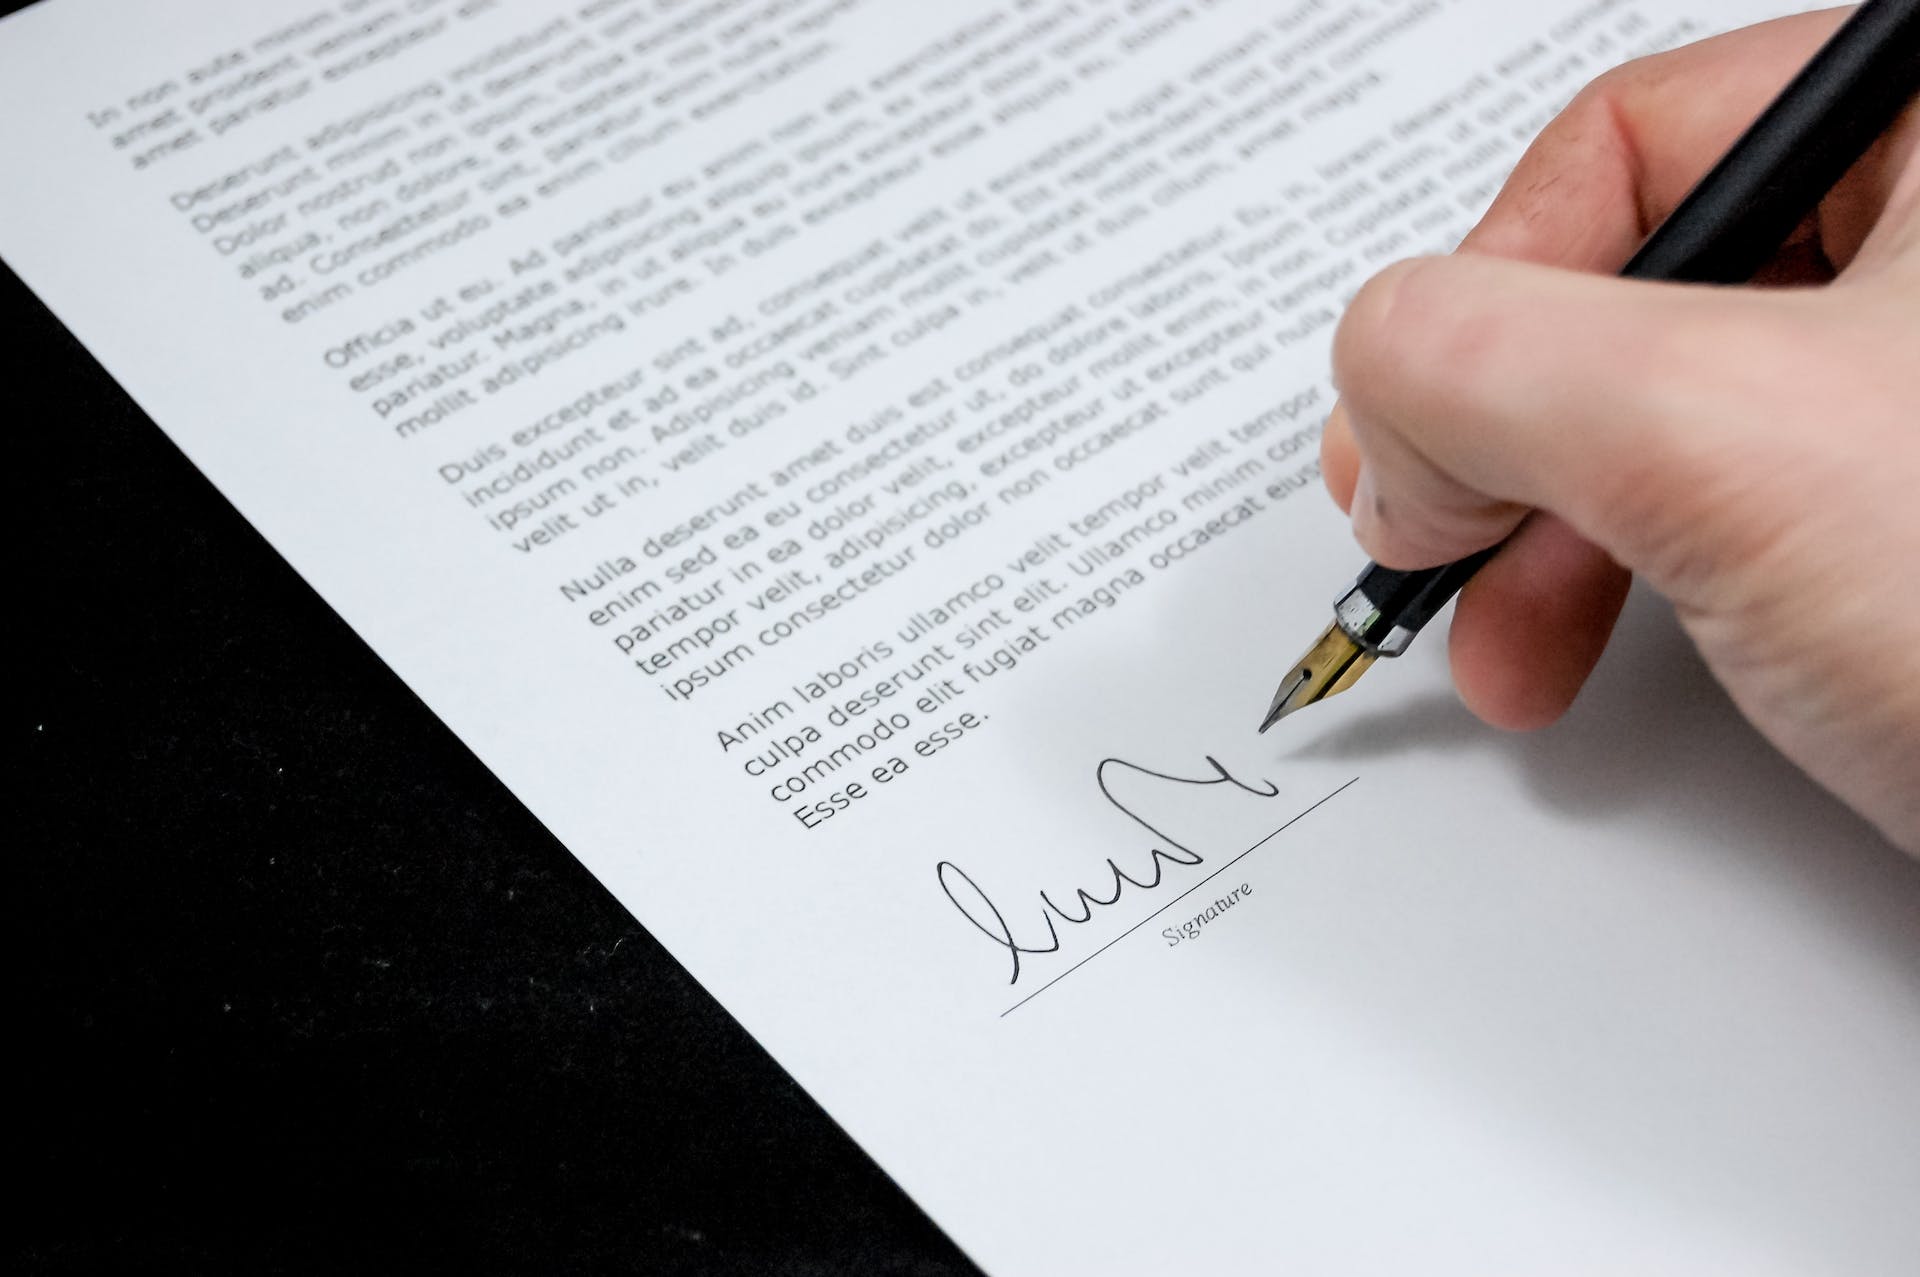 Personne signant un document | Source : Pexels